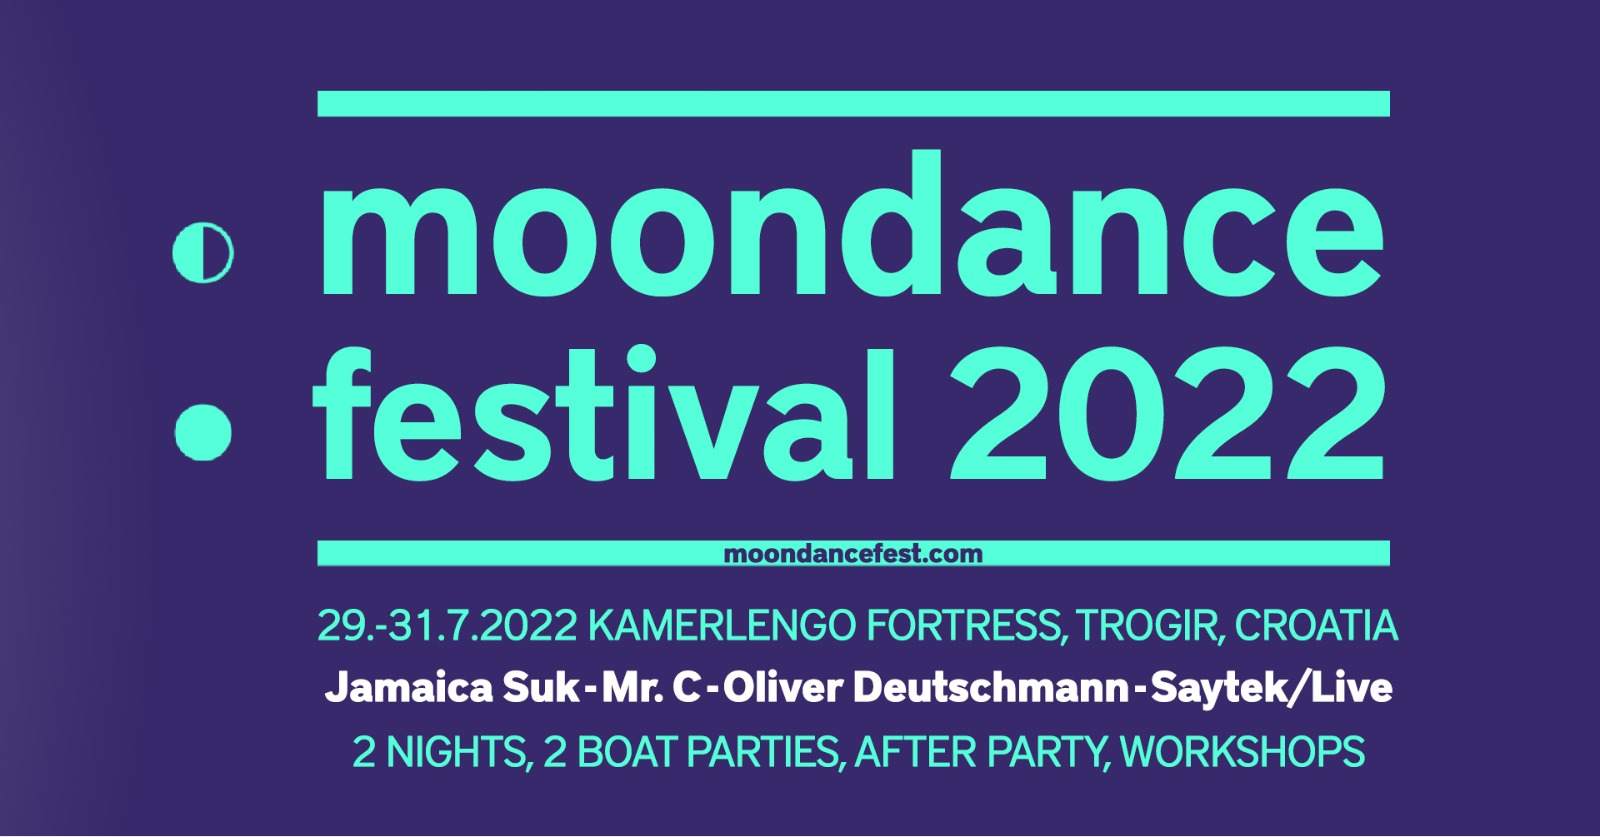 Moondance Festival 2022 - フライヤー表